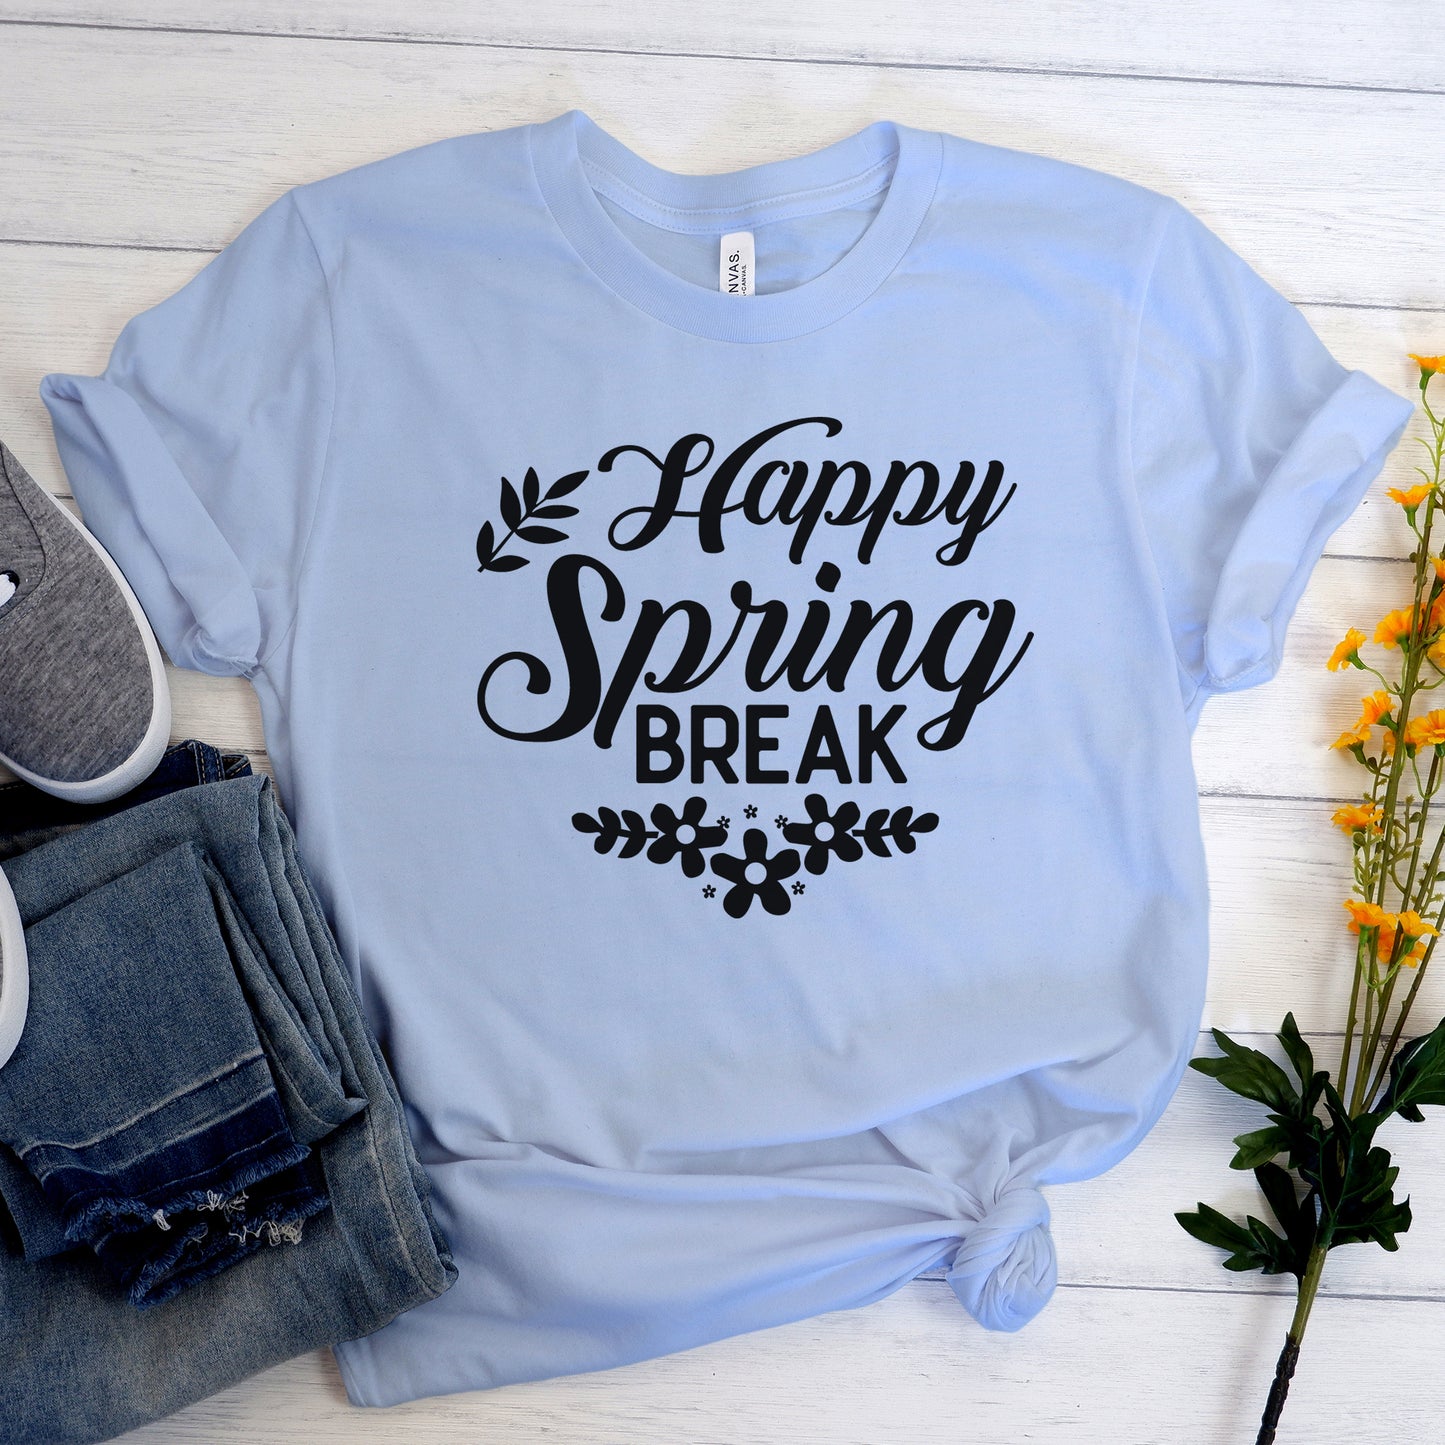 "Happy Spring Break" Graphic